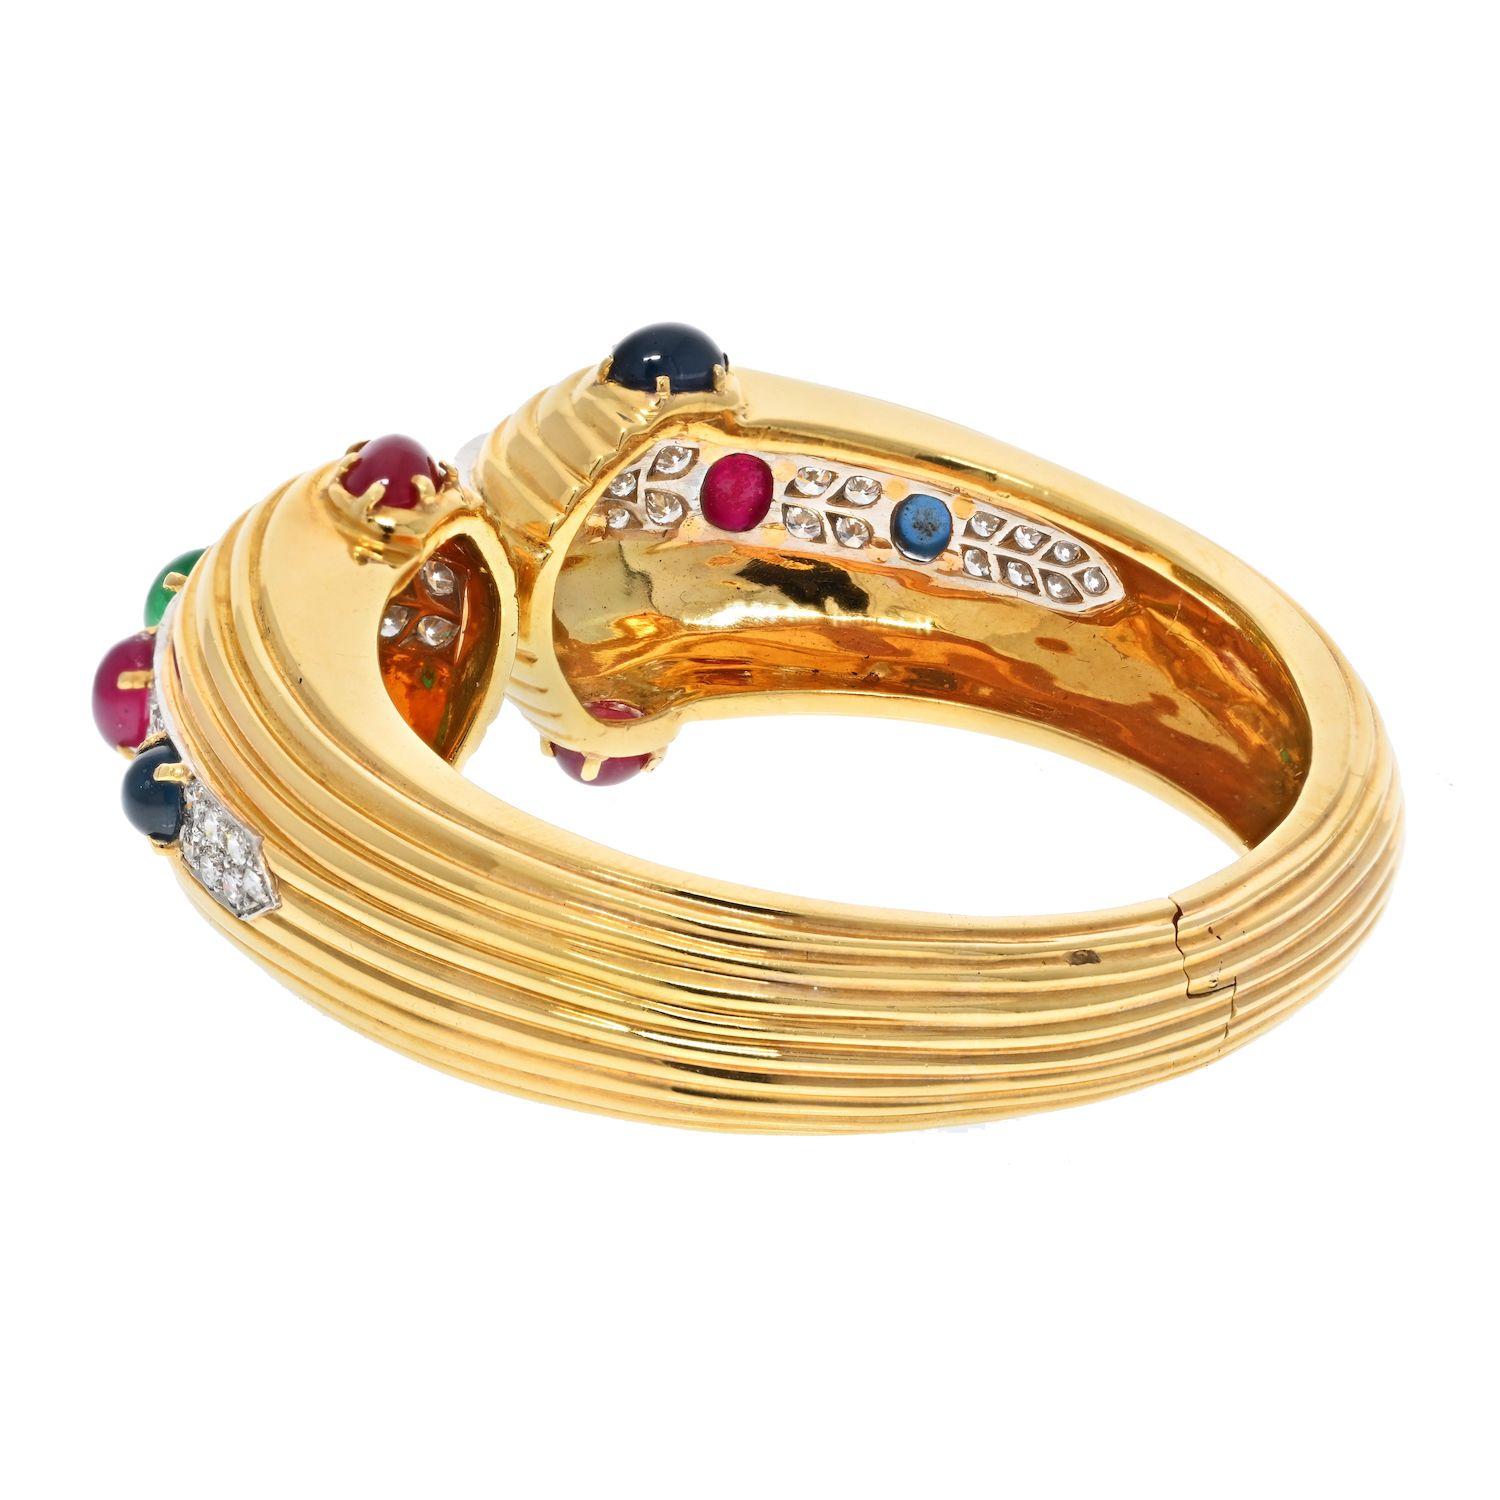 David Webb : en or jaune 18 carats, ce bracelet a un design à charnière. Il se porte comme un bracelet avec un mécanisme facile à mettre et à enlever. 
Il est incrusté de magnifiques pierres précieuses comme des rubis, des saphirs et des émeraudes